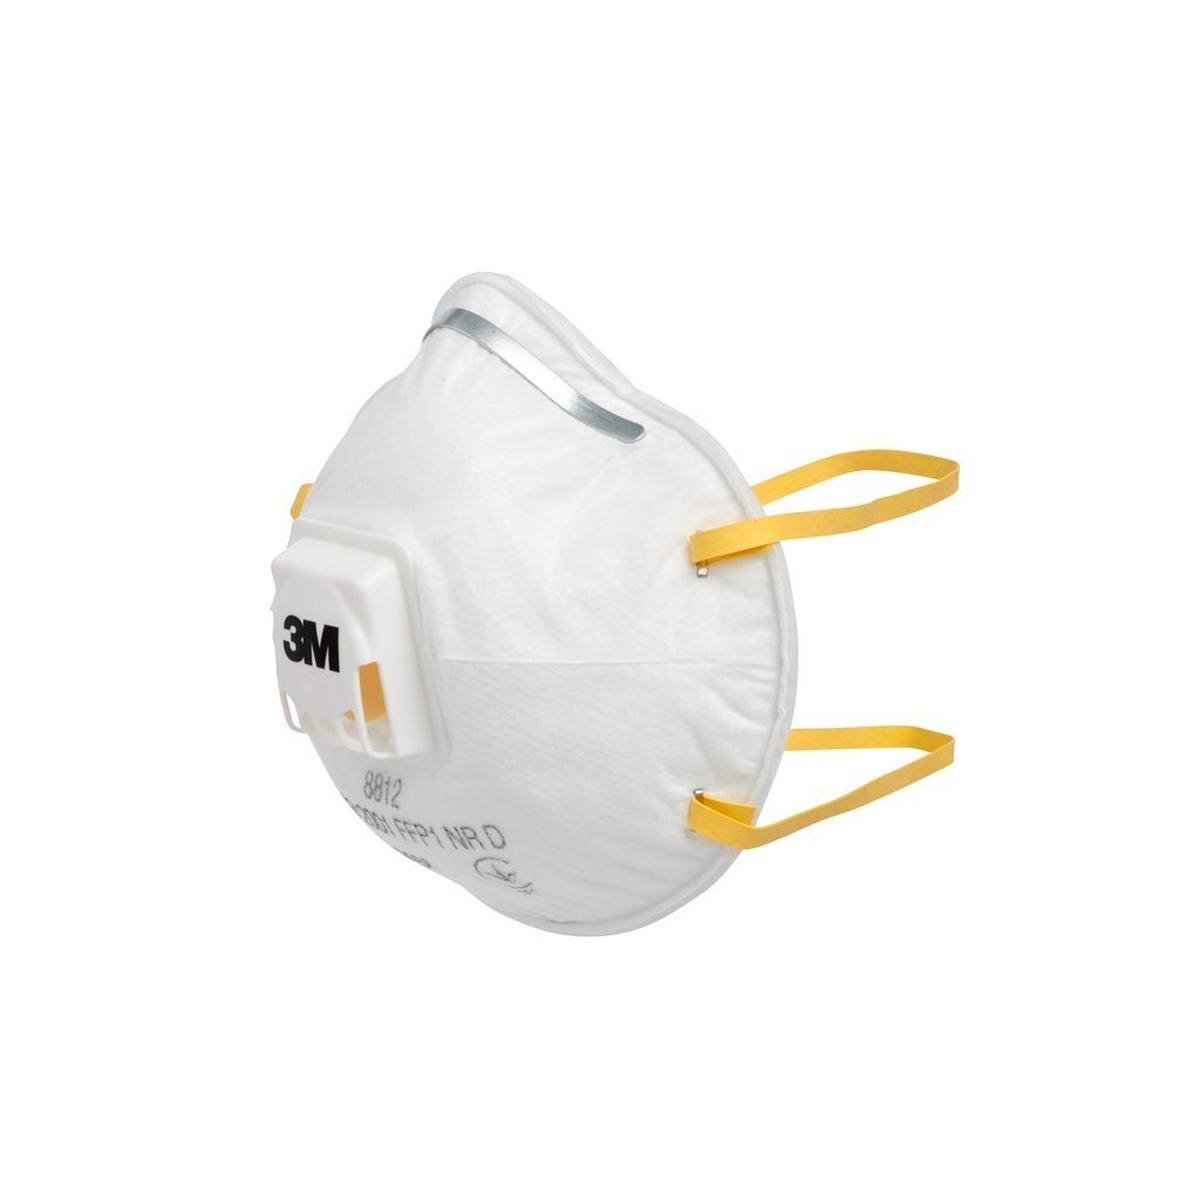 Respirador 3M 8812 FFP1 con válvula de exhalación de flujo frío, hasta 4 veces el valor límite